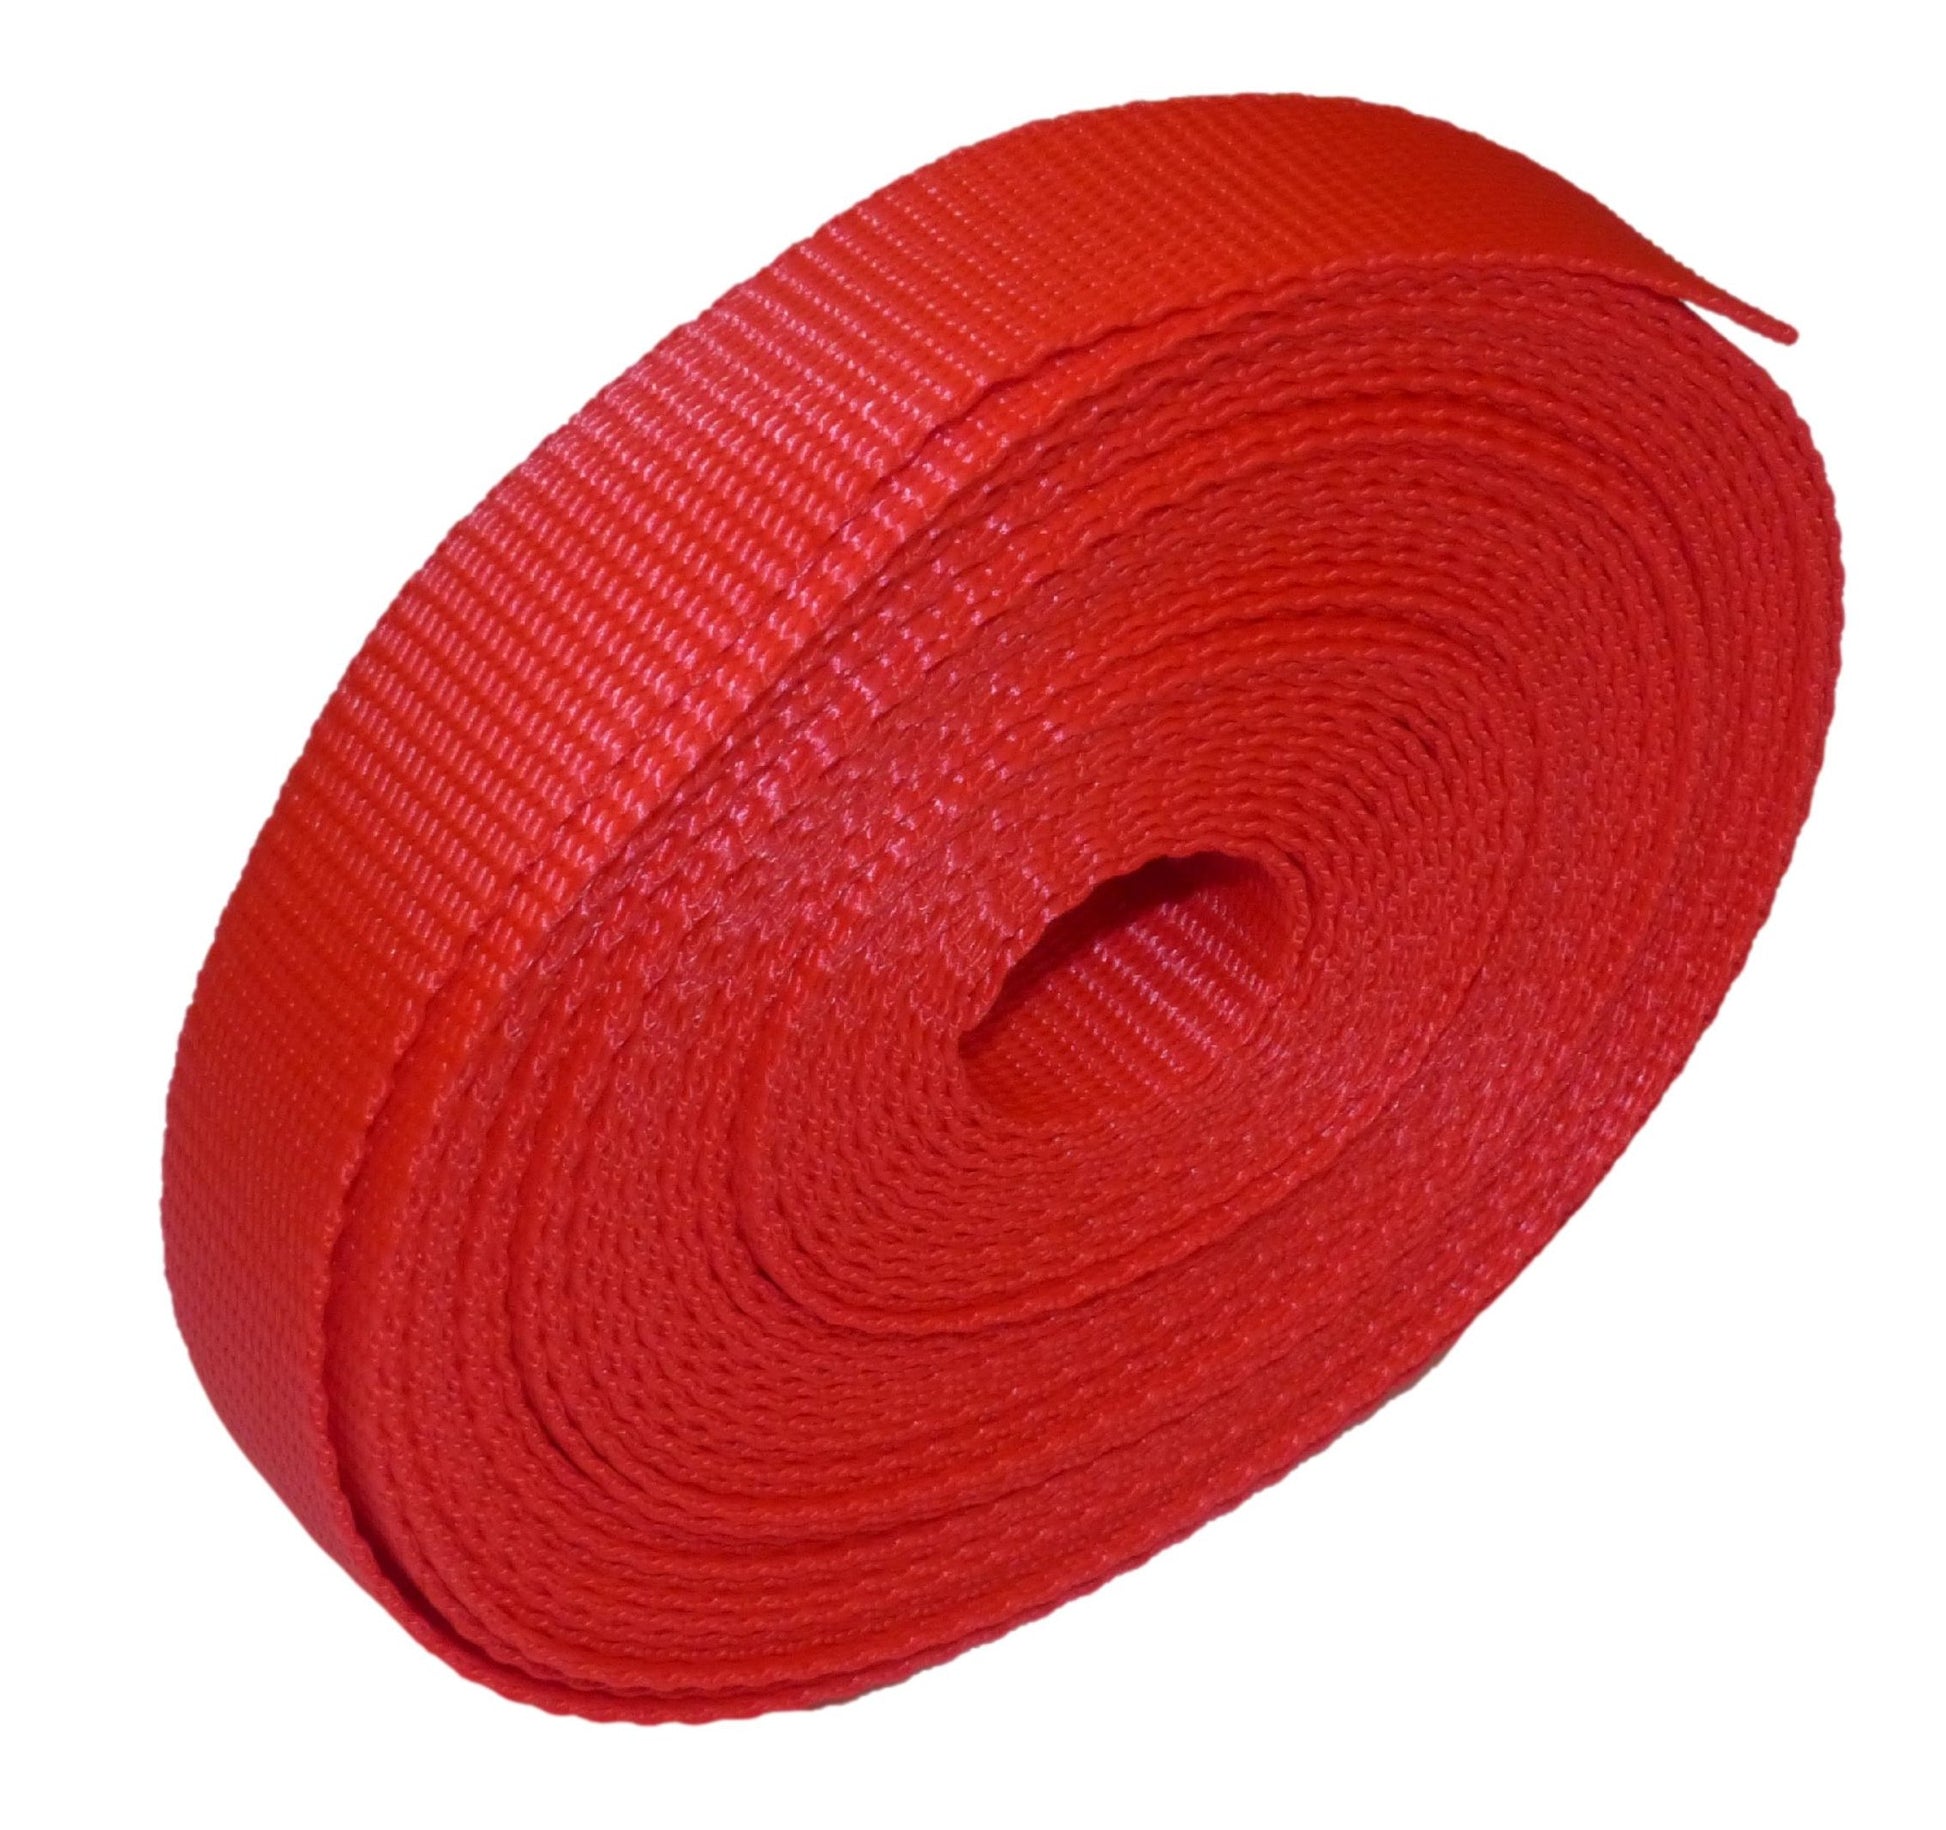 Benristraps 25mm Polypropylene Webbing, 10 metres (32') in red